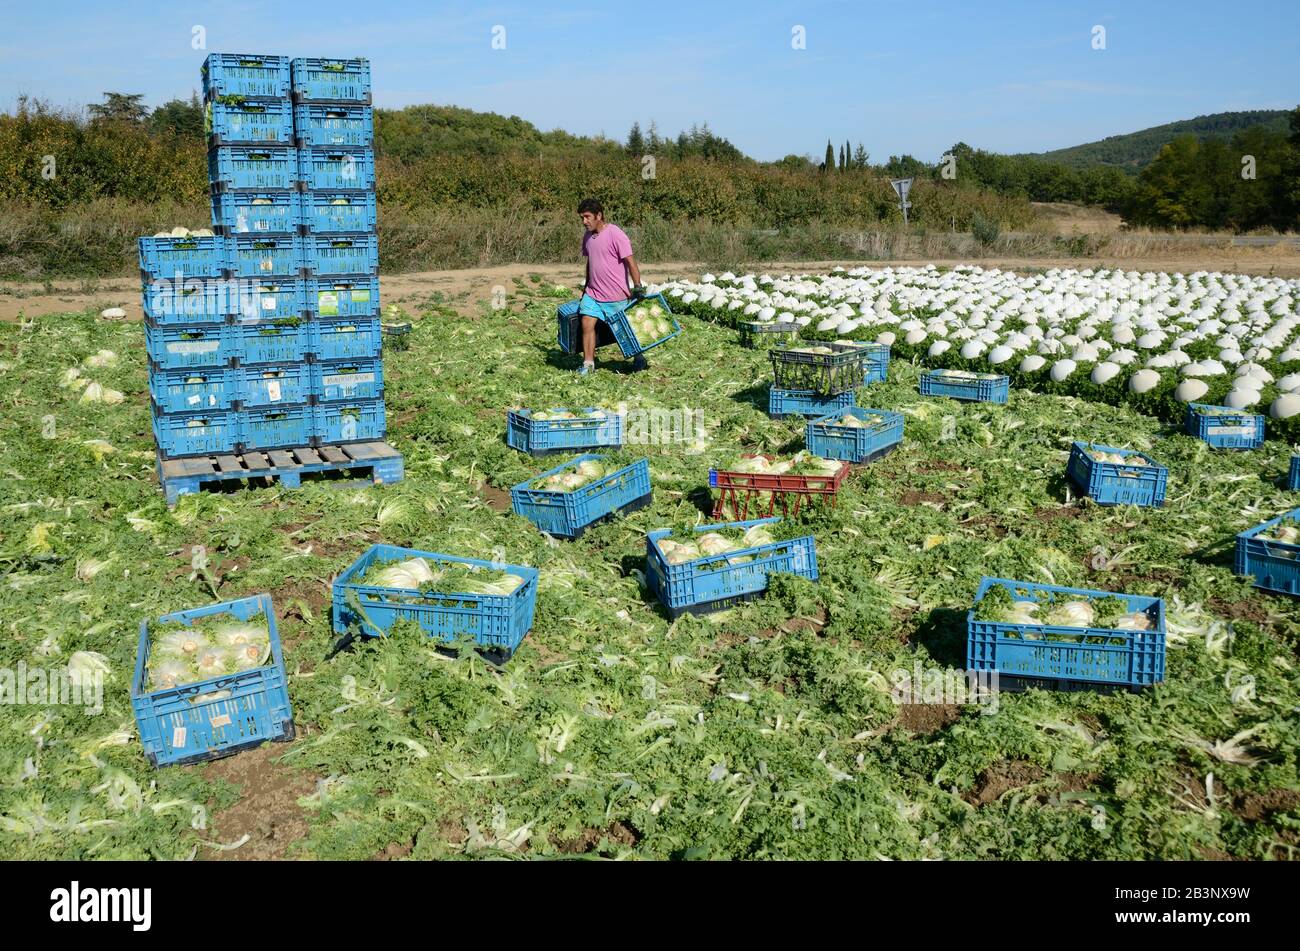 Farmarbeiter Stapeln von Kartons mit Salat oder Salat, die darunter wachsen Plastikschlocken im Bereich der intensiven Landwirtschaft oder Gartenbau Provence Frankreich Stockfoto